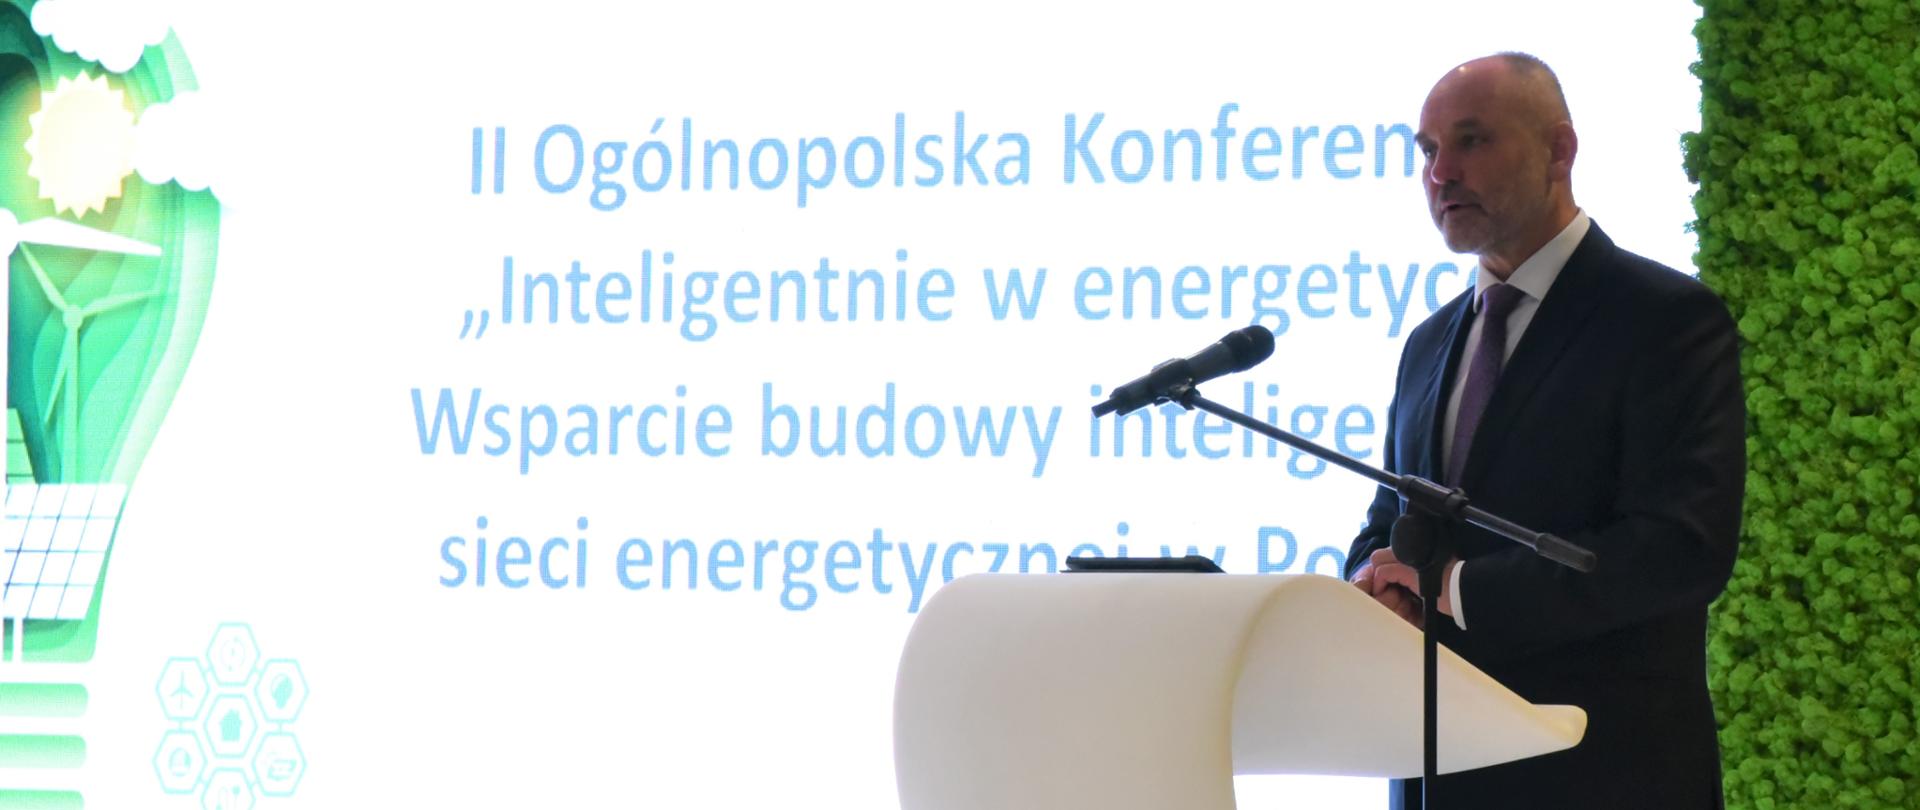 Wiceminister Piotr Dziadzio podczas konferencji "Inteligentnie w energetyce"